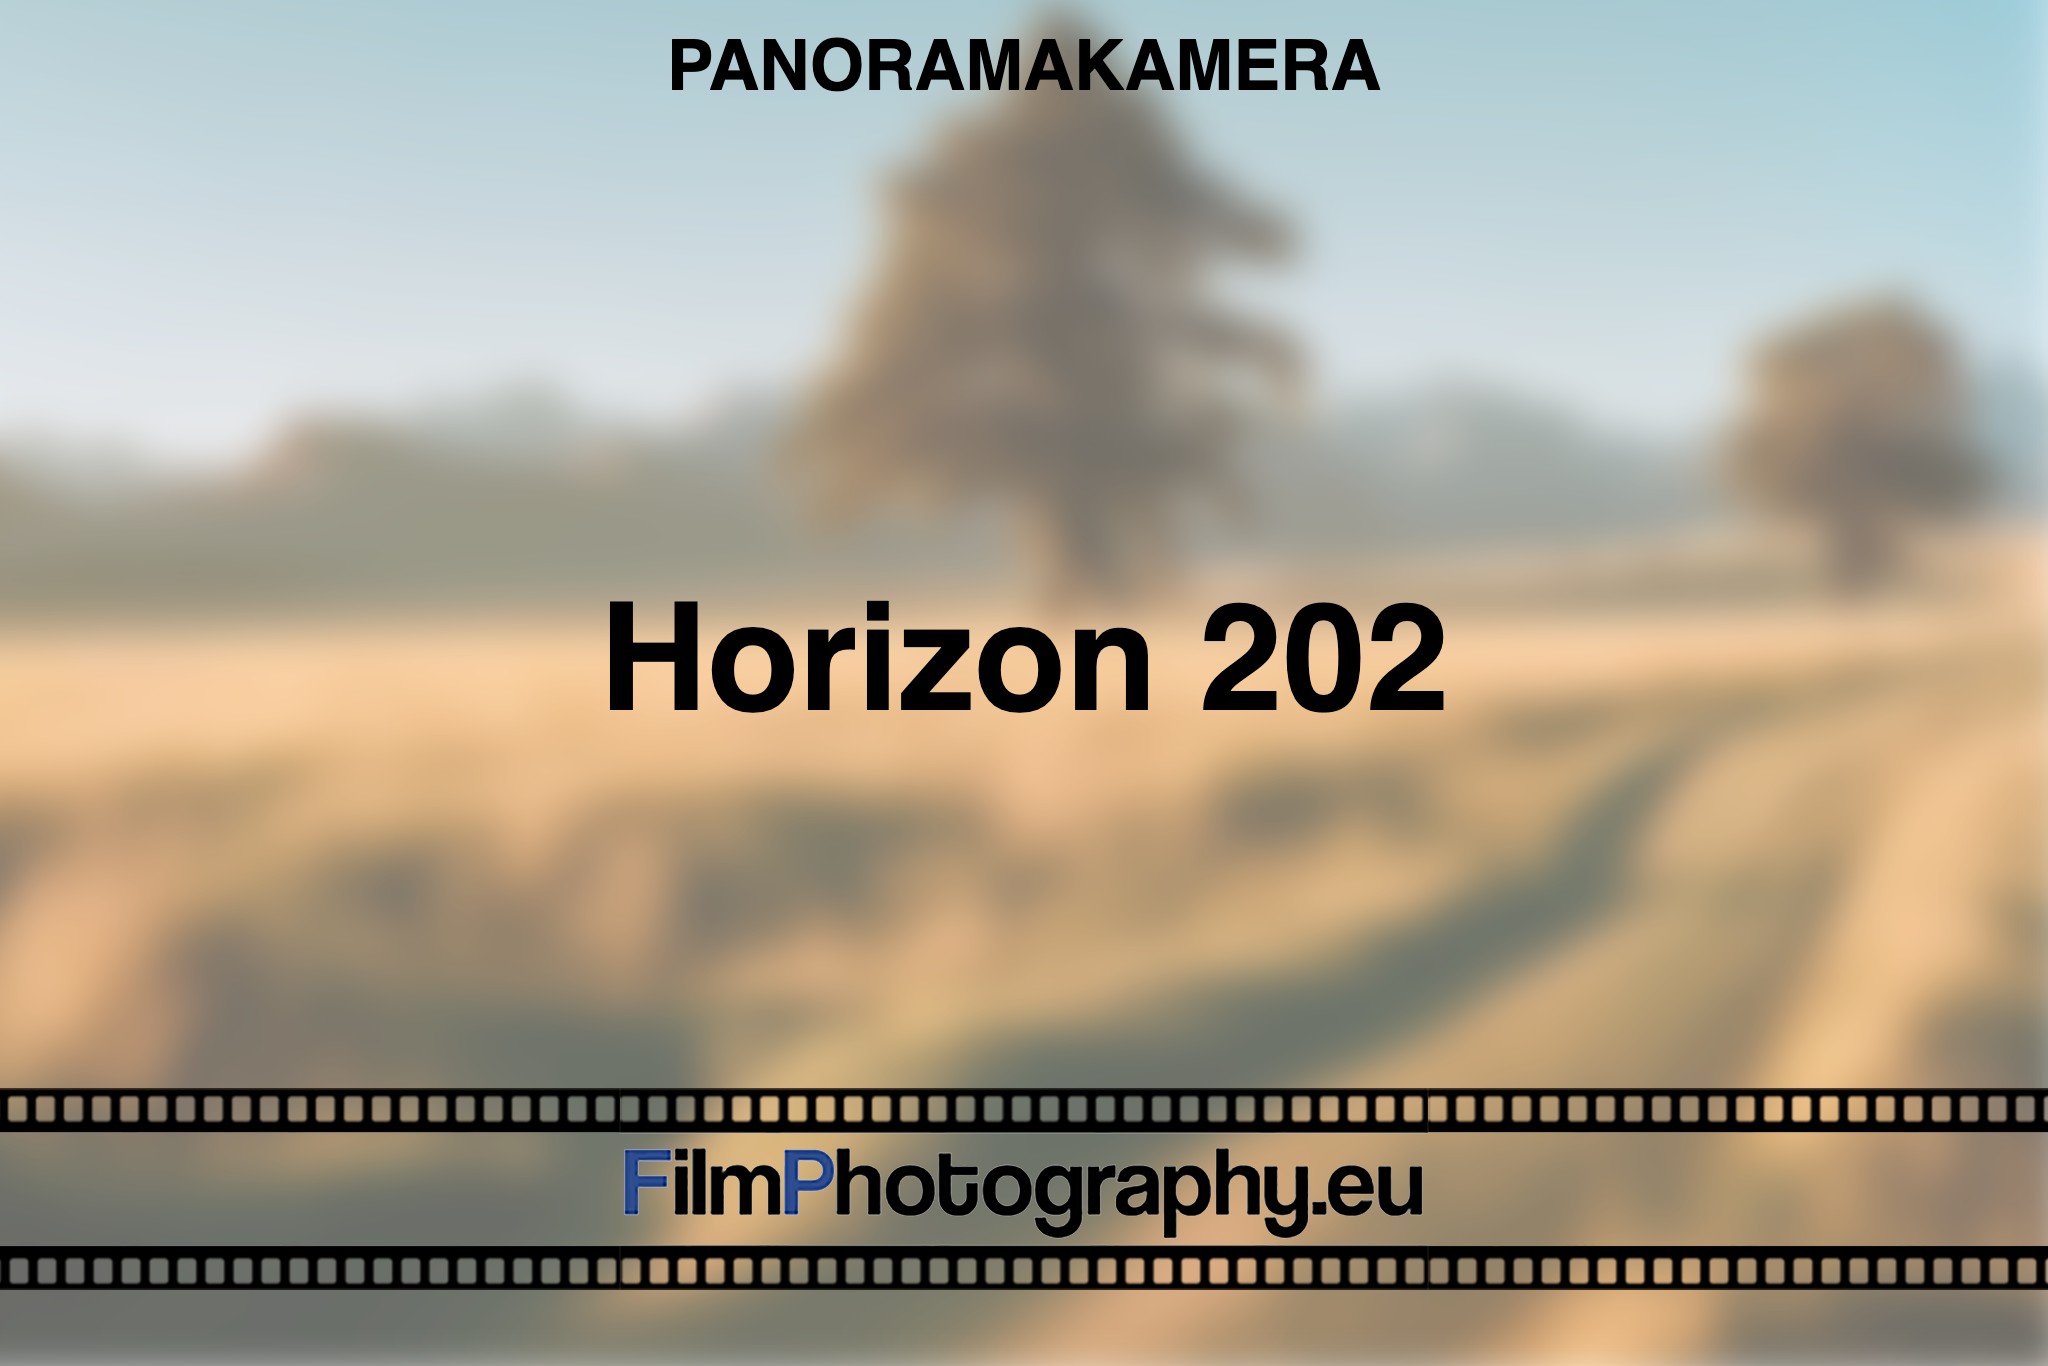 horizon-202-panoramakamera-bnv